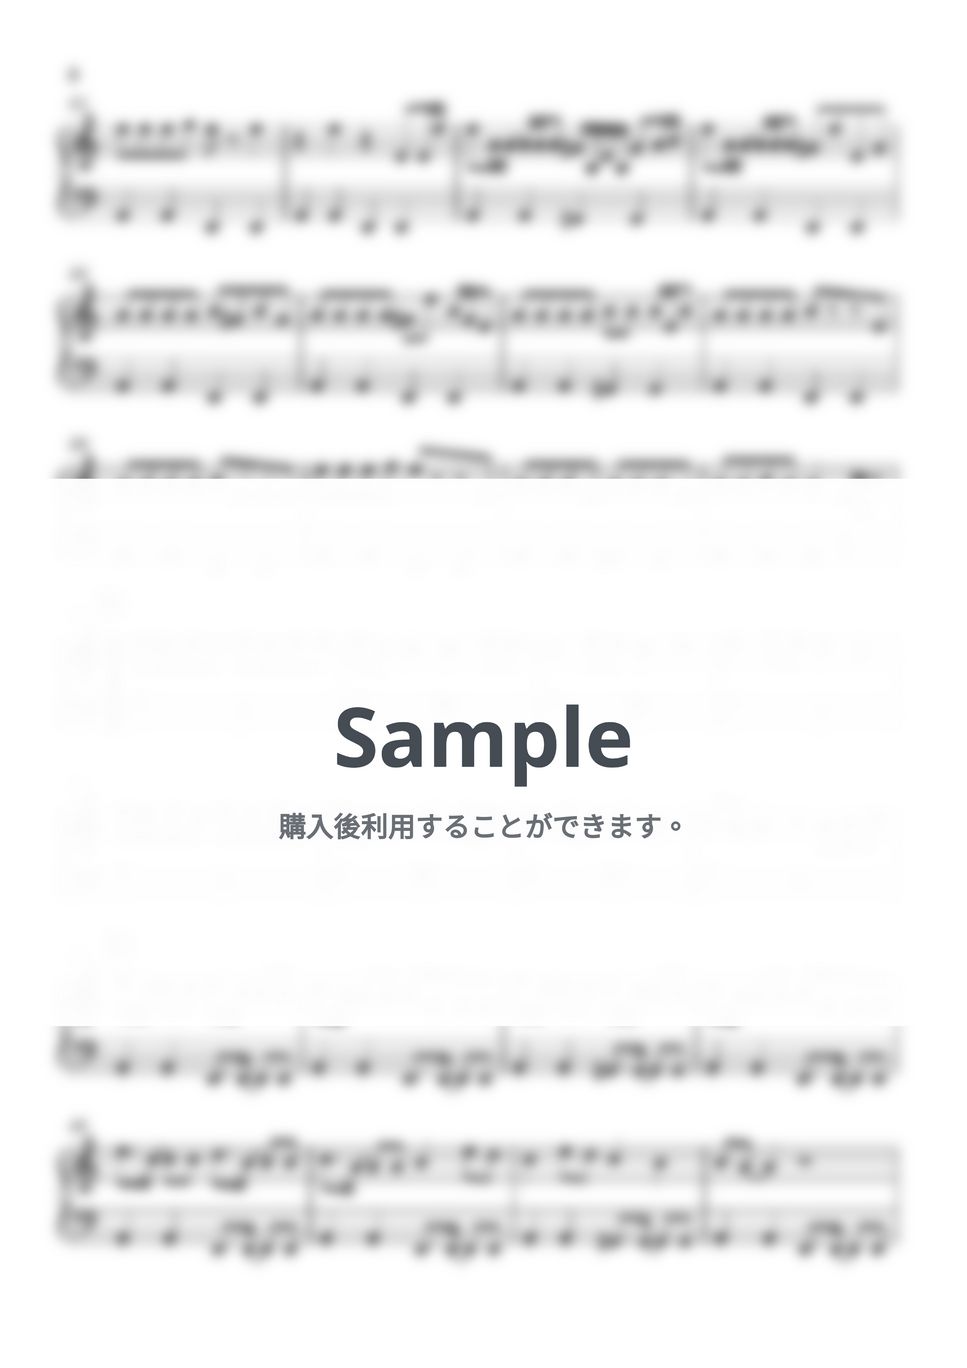 Creepy Nuts - Bling-Bang-Bang-Born (マッシュル(MASHLE)) by Piano Lovers. jp